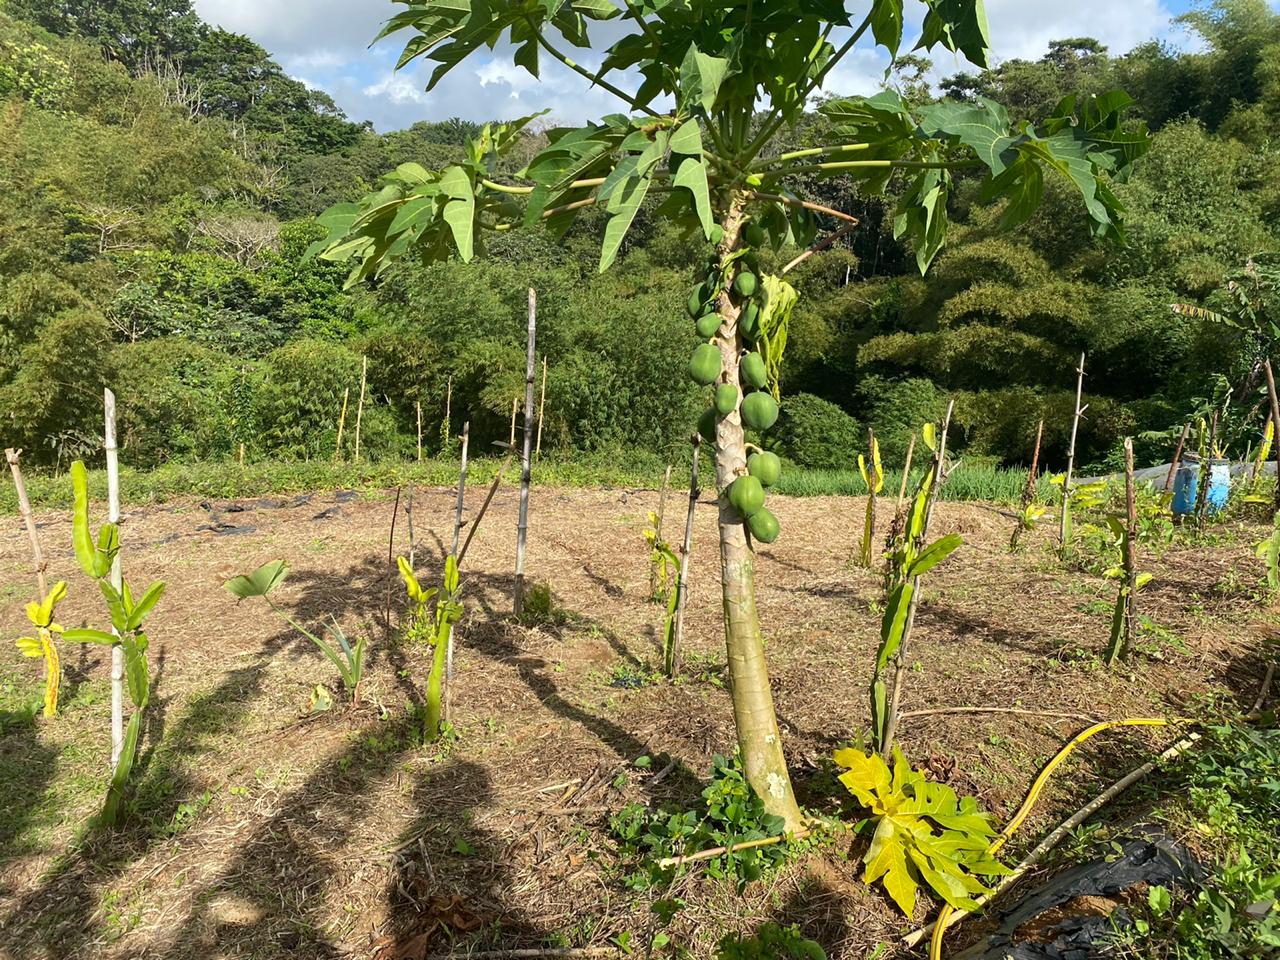     La route des fermes bio de Martinique réunit producteurs bio et chefs d'exception 

